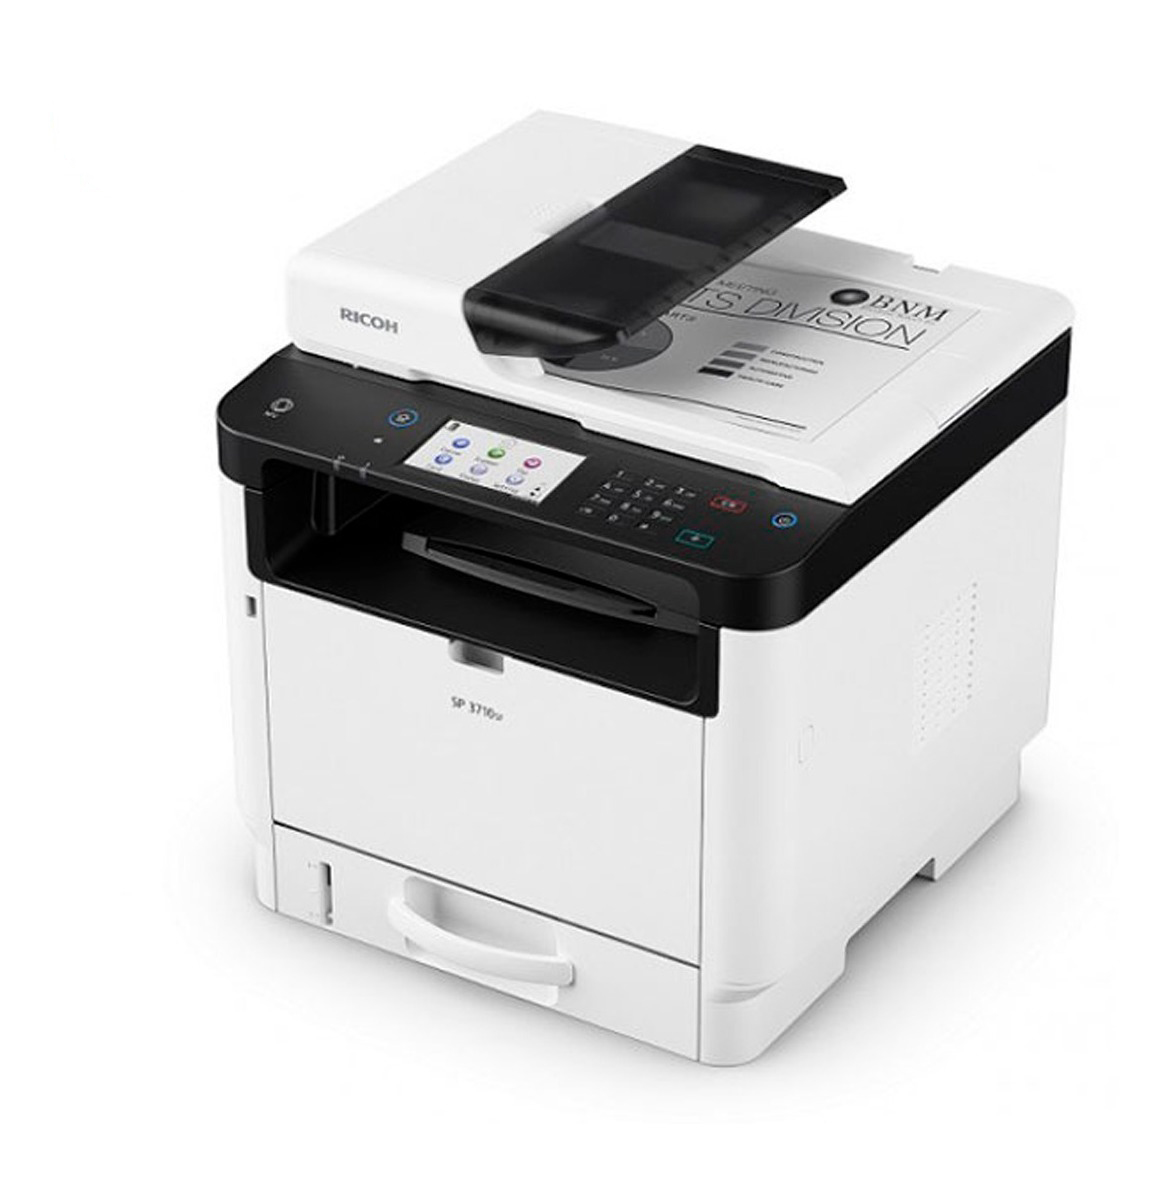 INSUMATICA s.r.l. :: Alquiler y Venta de Fotocopiadoras e Impresoras Ricoh  – Alquiler y Venta de Fotocopiadoras e Impresoras Multifuncion y Soluciones